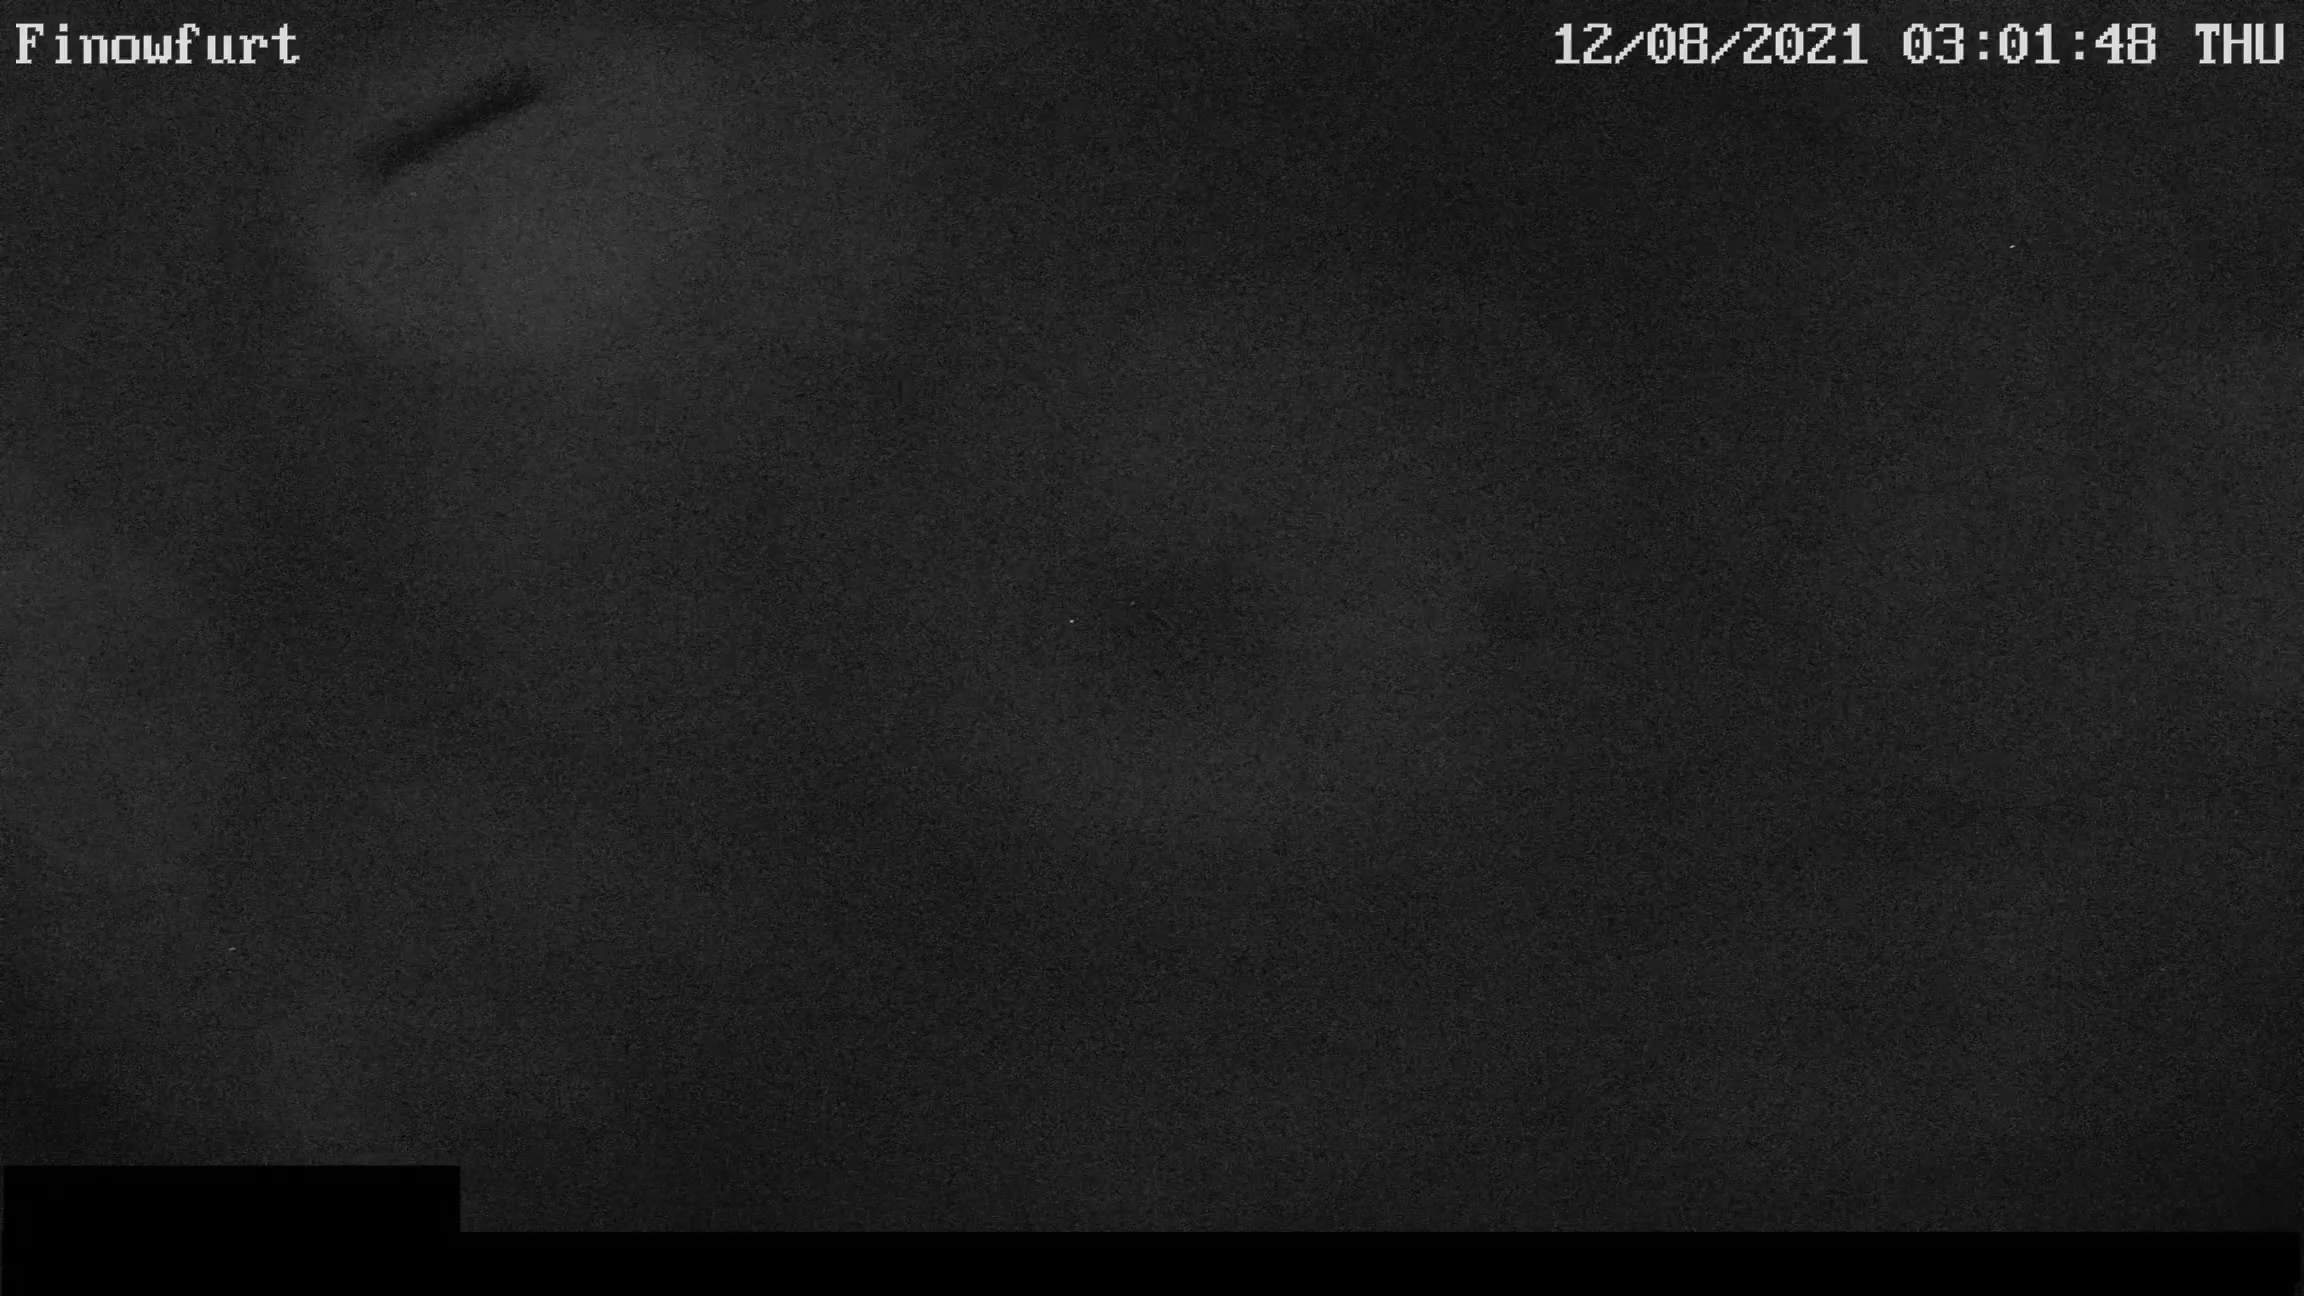 Webcam-Bild von 3 Uhr